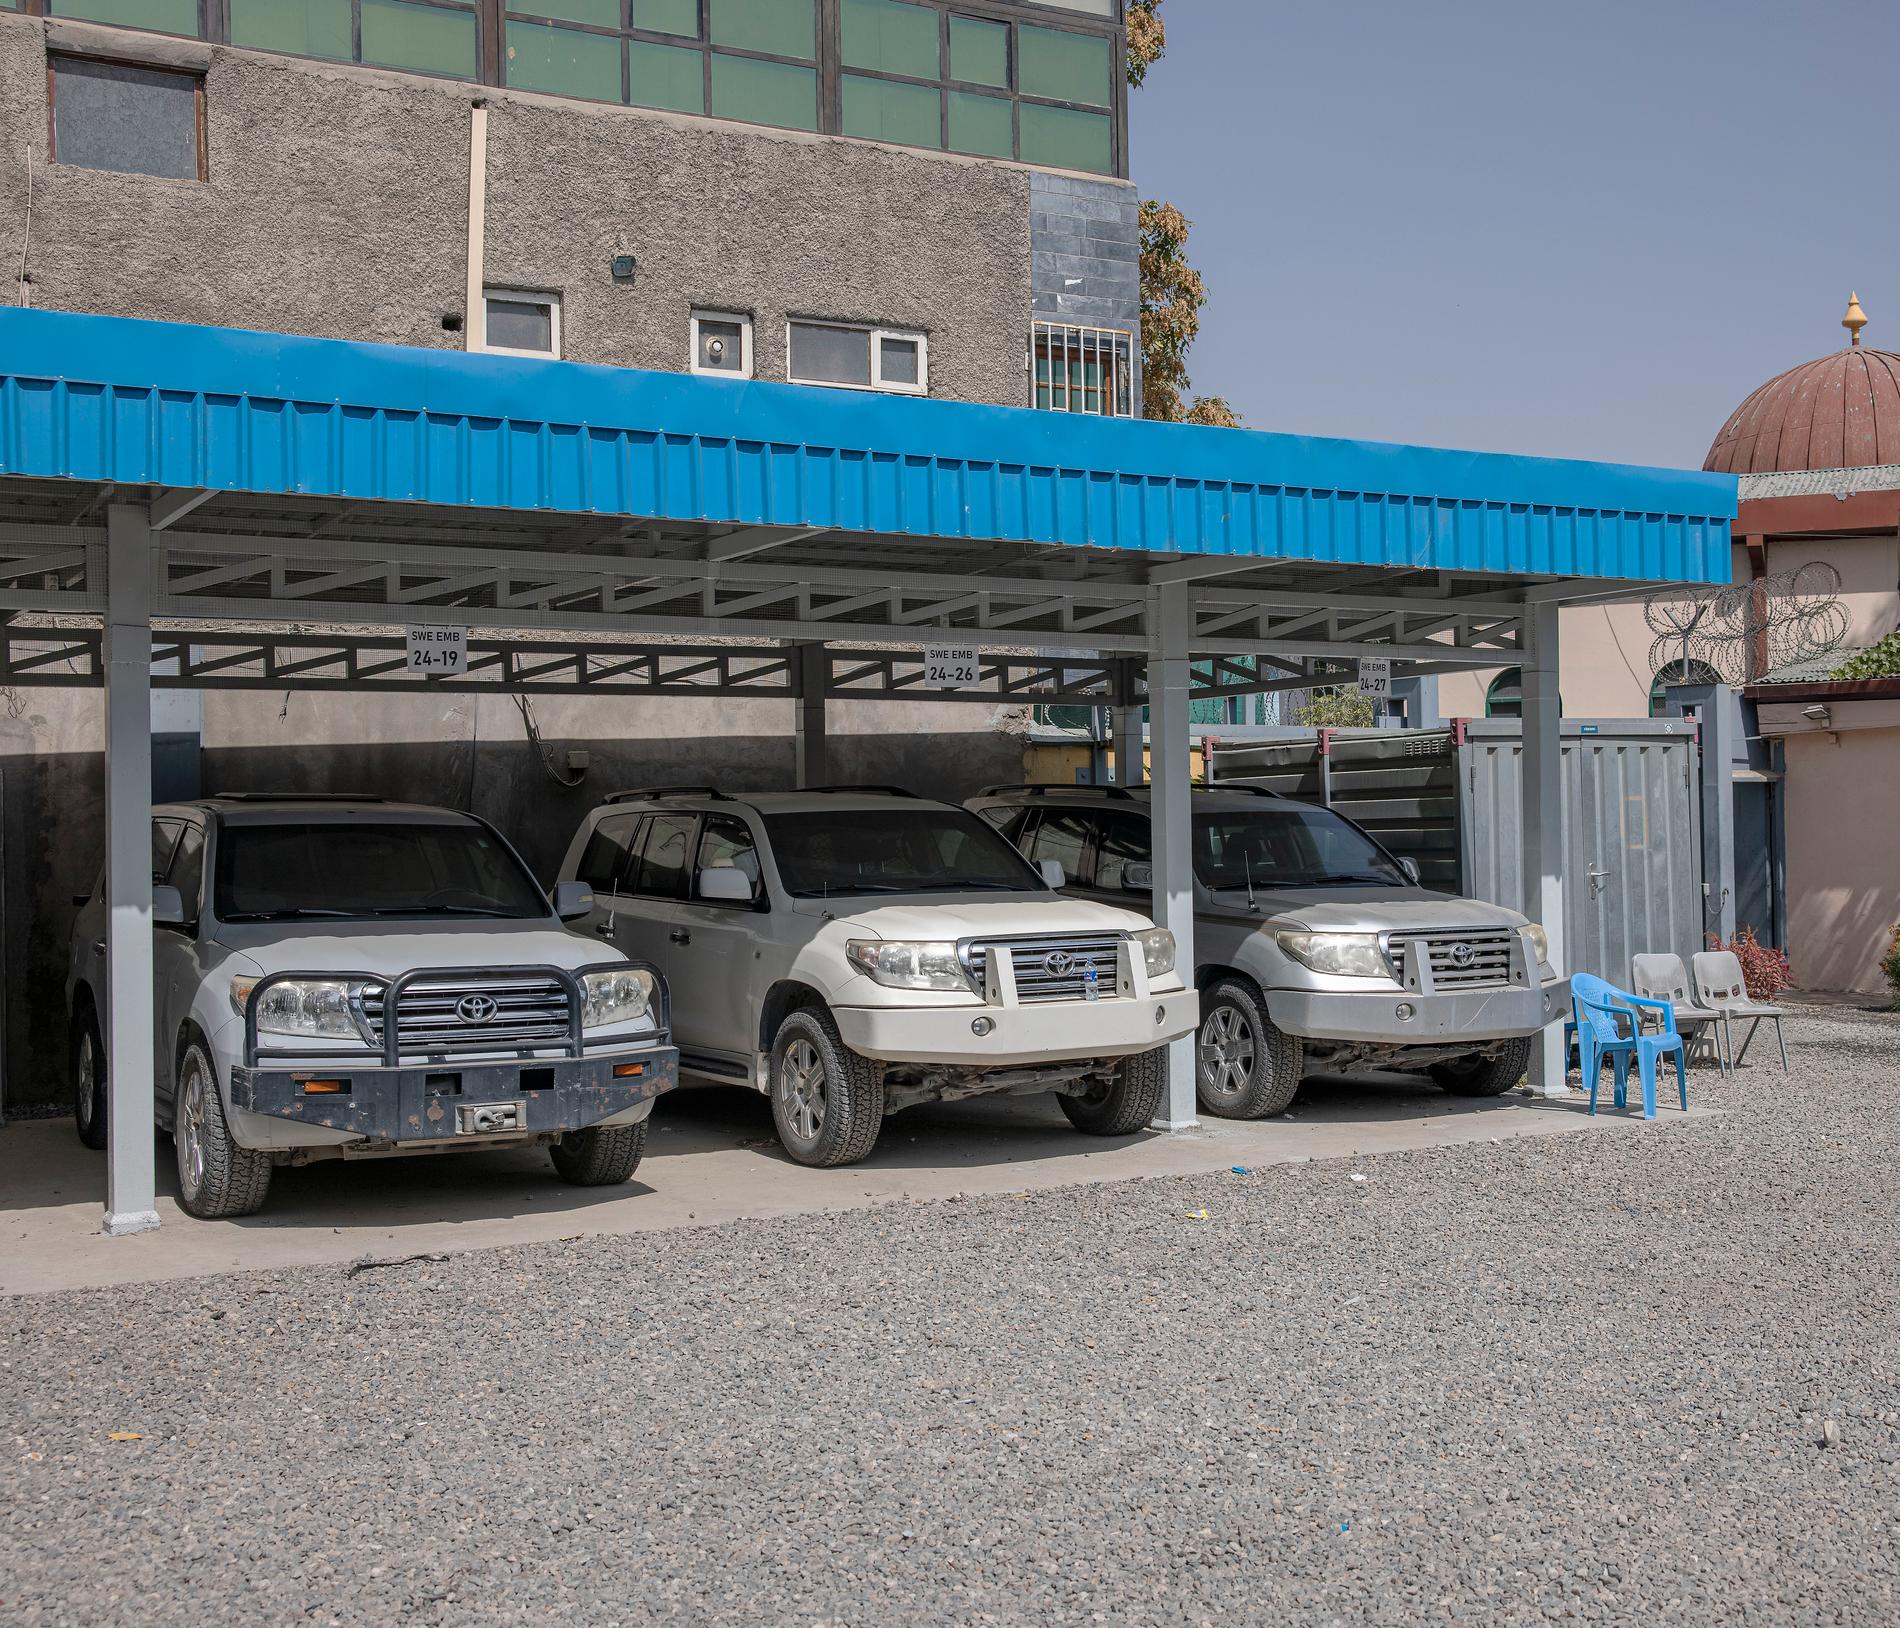 Utanför Sveriges ambassad i Kabul har bilarna lämnats kvar.